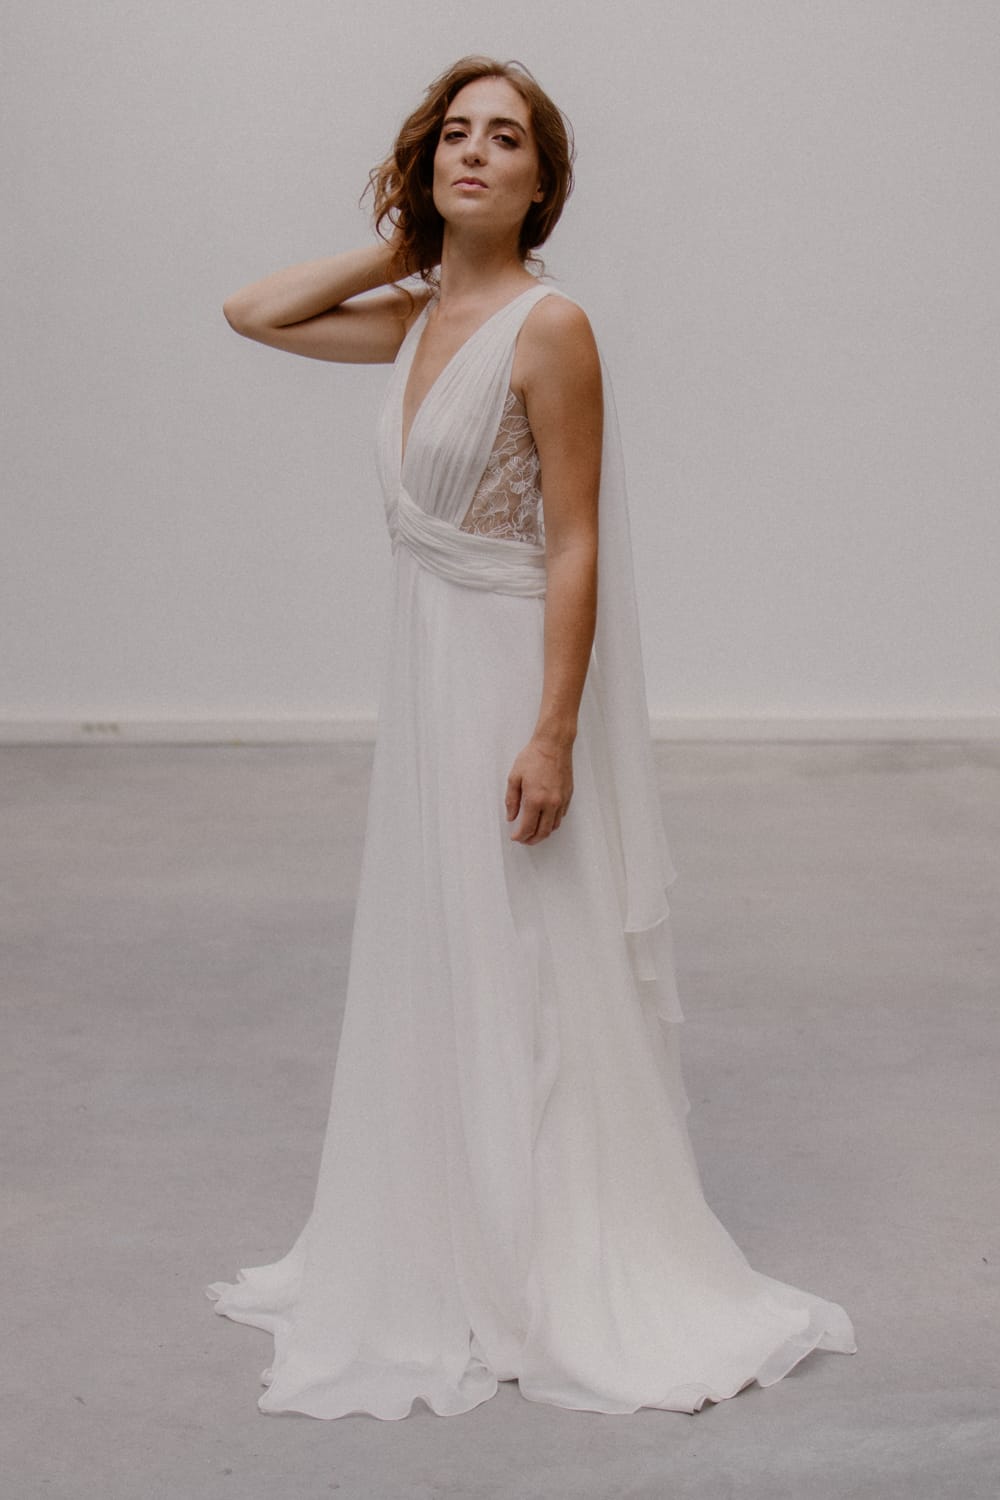 Atelier Swan - Robes de mariée - Collection 2023 - Photos : Juli Etta Photographie - Blog mariage : La mariée aux pieds nus